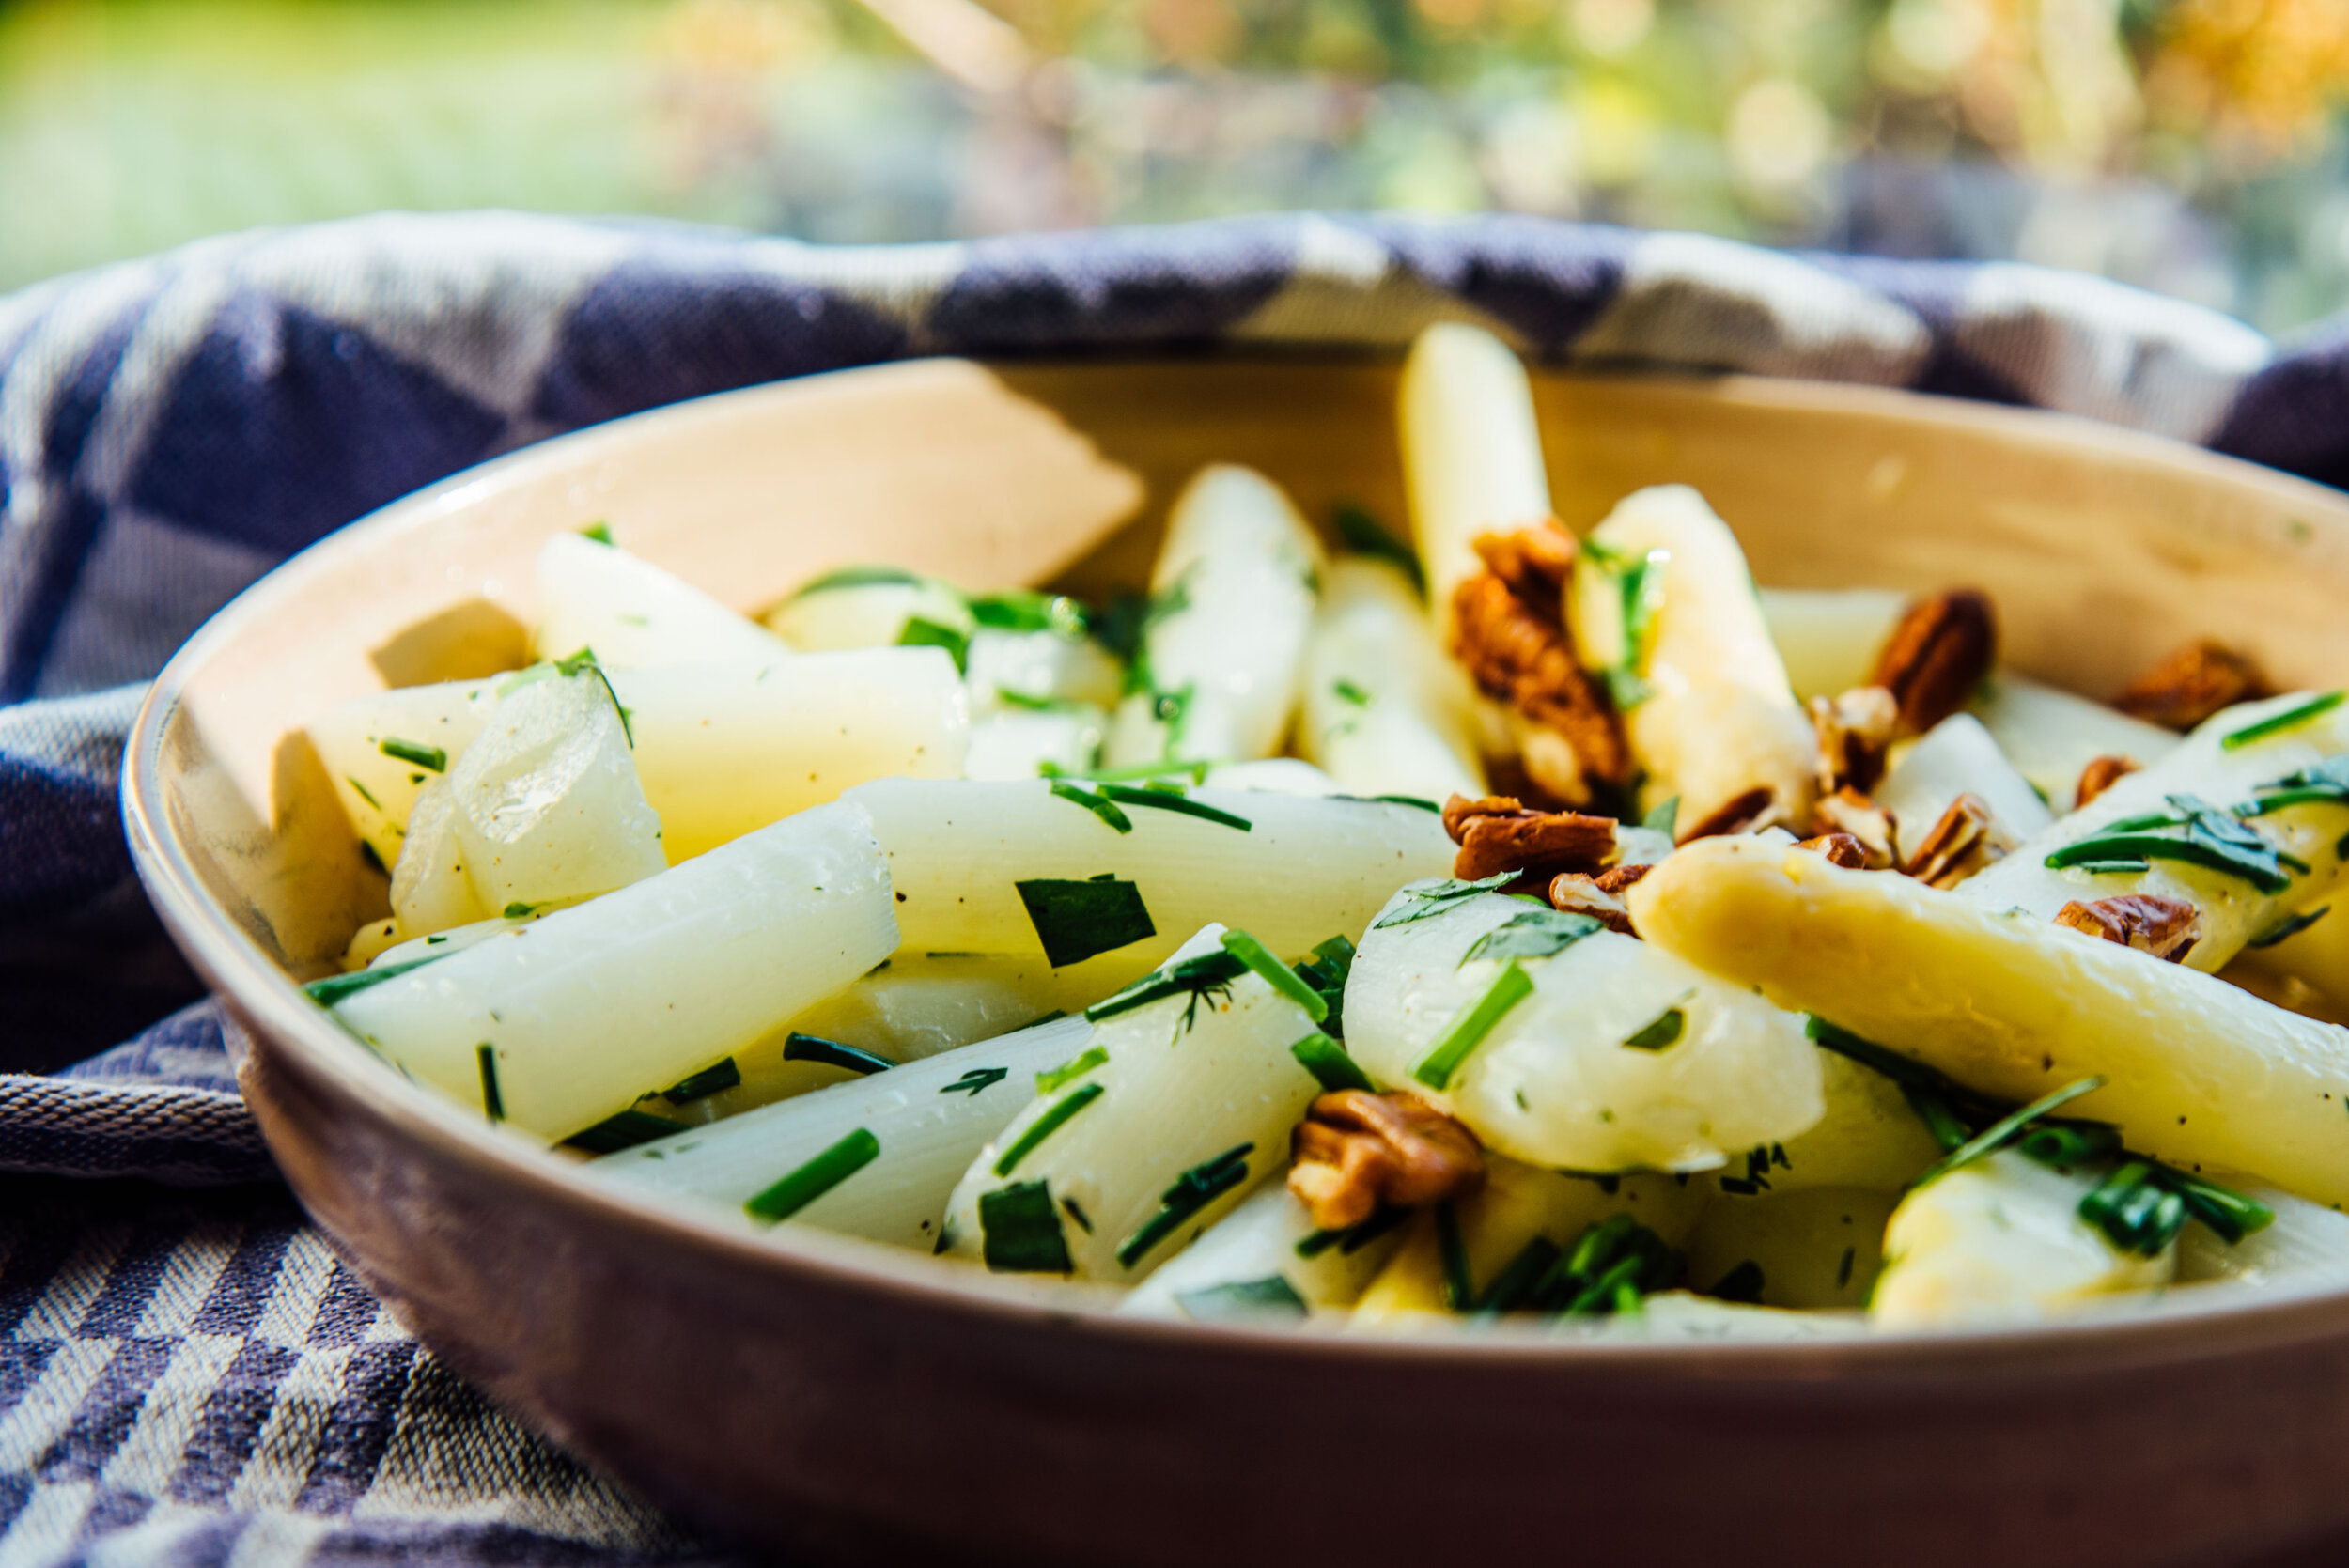 salade van asperges met fijne dressing, groene kruiden en noten-pittencrumble